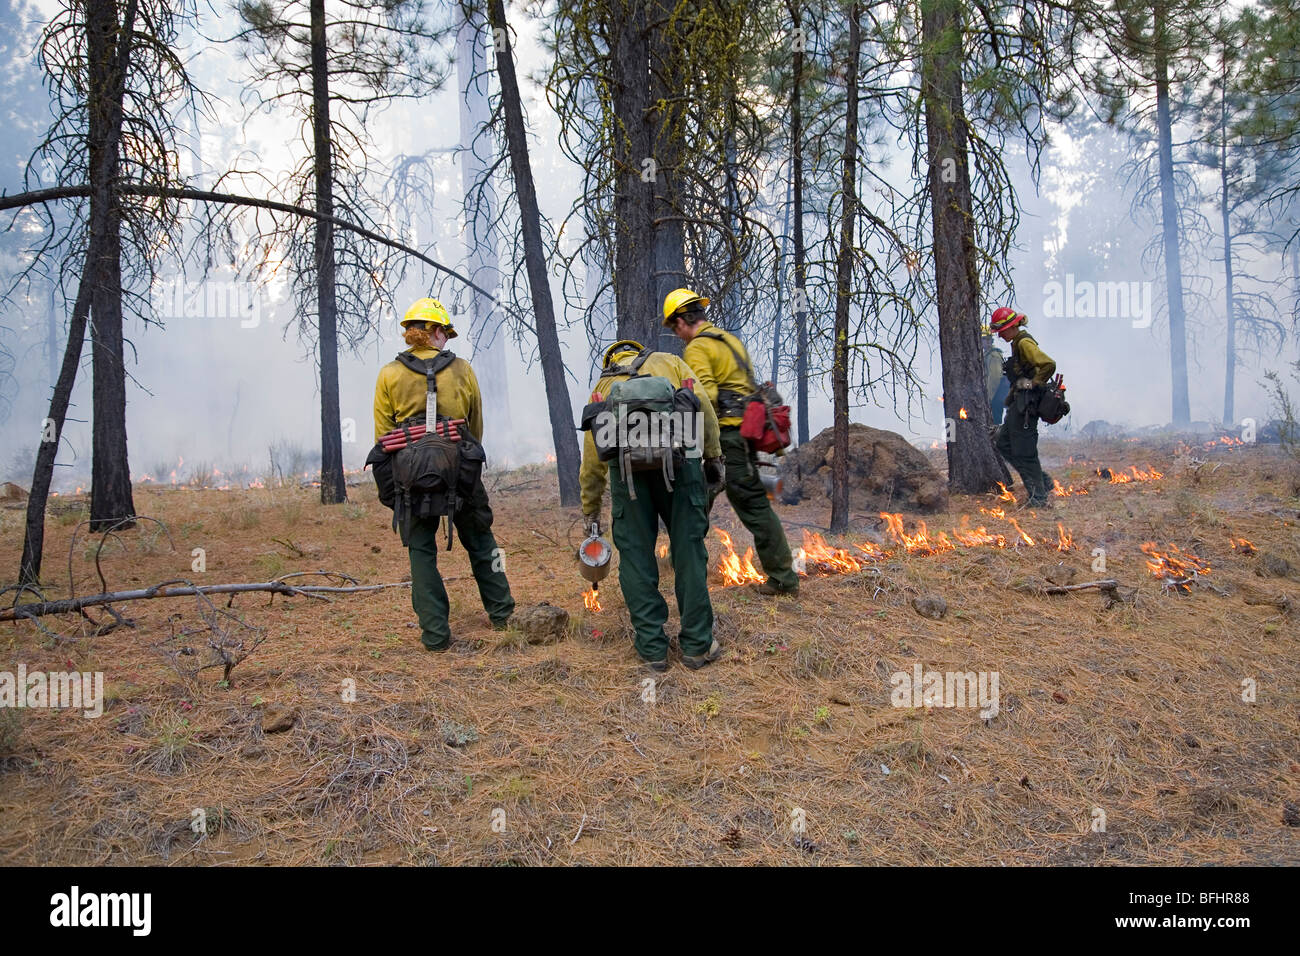 El Servicio Forestal de los Estados Unidos equipos de lucha contra incendios ayudan a controlar una quema controlada o prescrita en un bosque en las montañas de la cascada de Orego Foto de stock